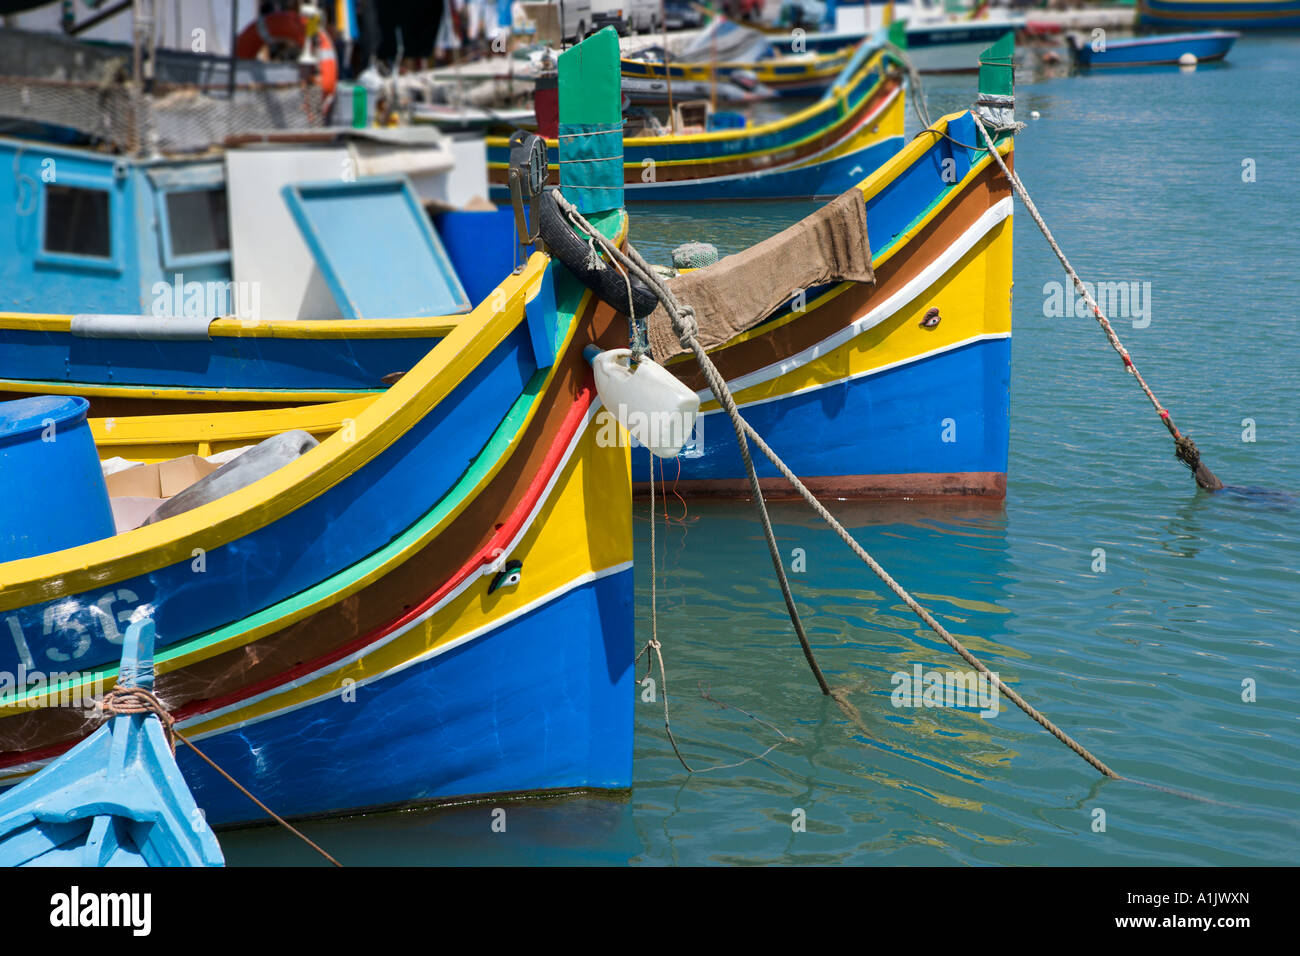 Les bateaux de pêche typiques luzzus ou dans le port de Marsaxlokk, Malte Banque D'Images